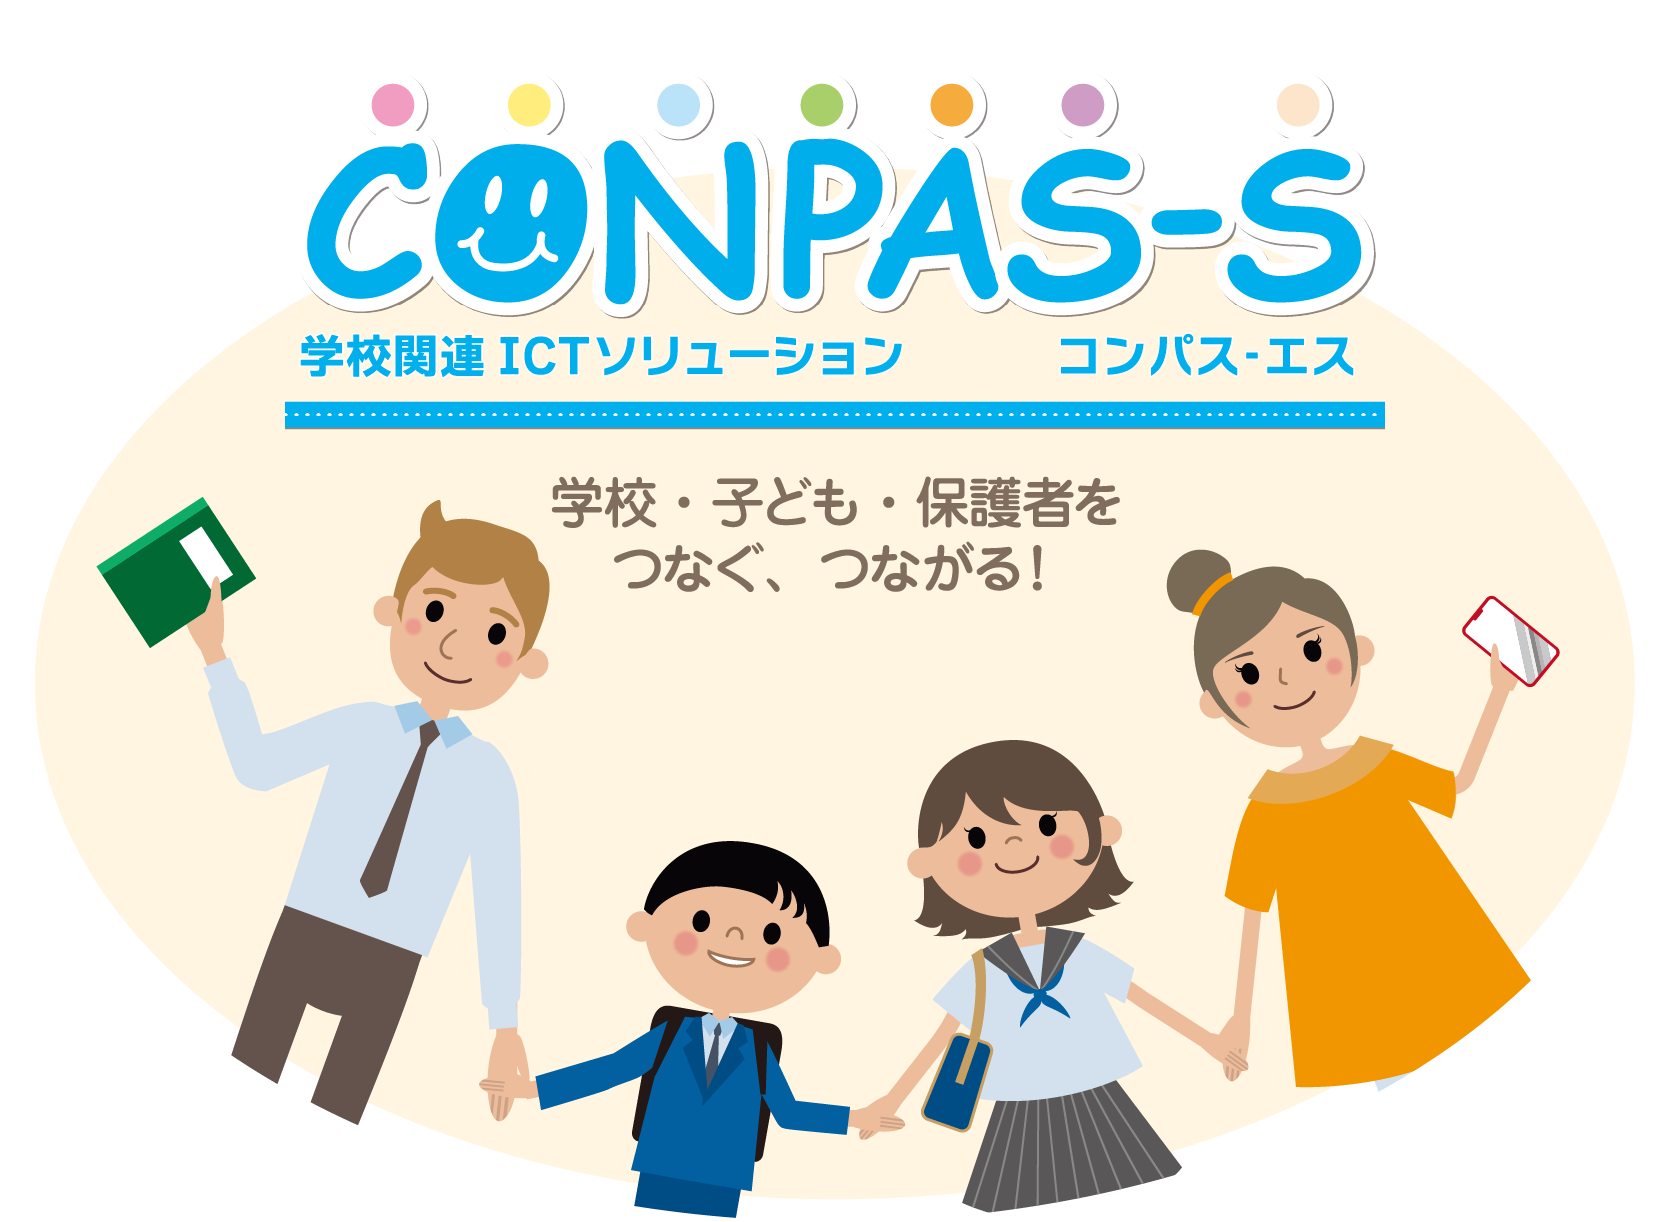 CONPAS-Sメインイメージ